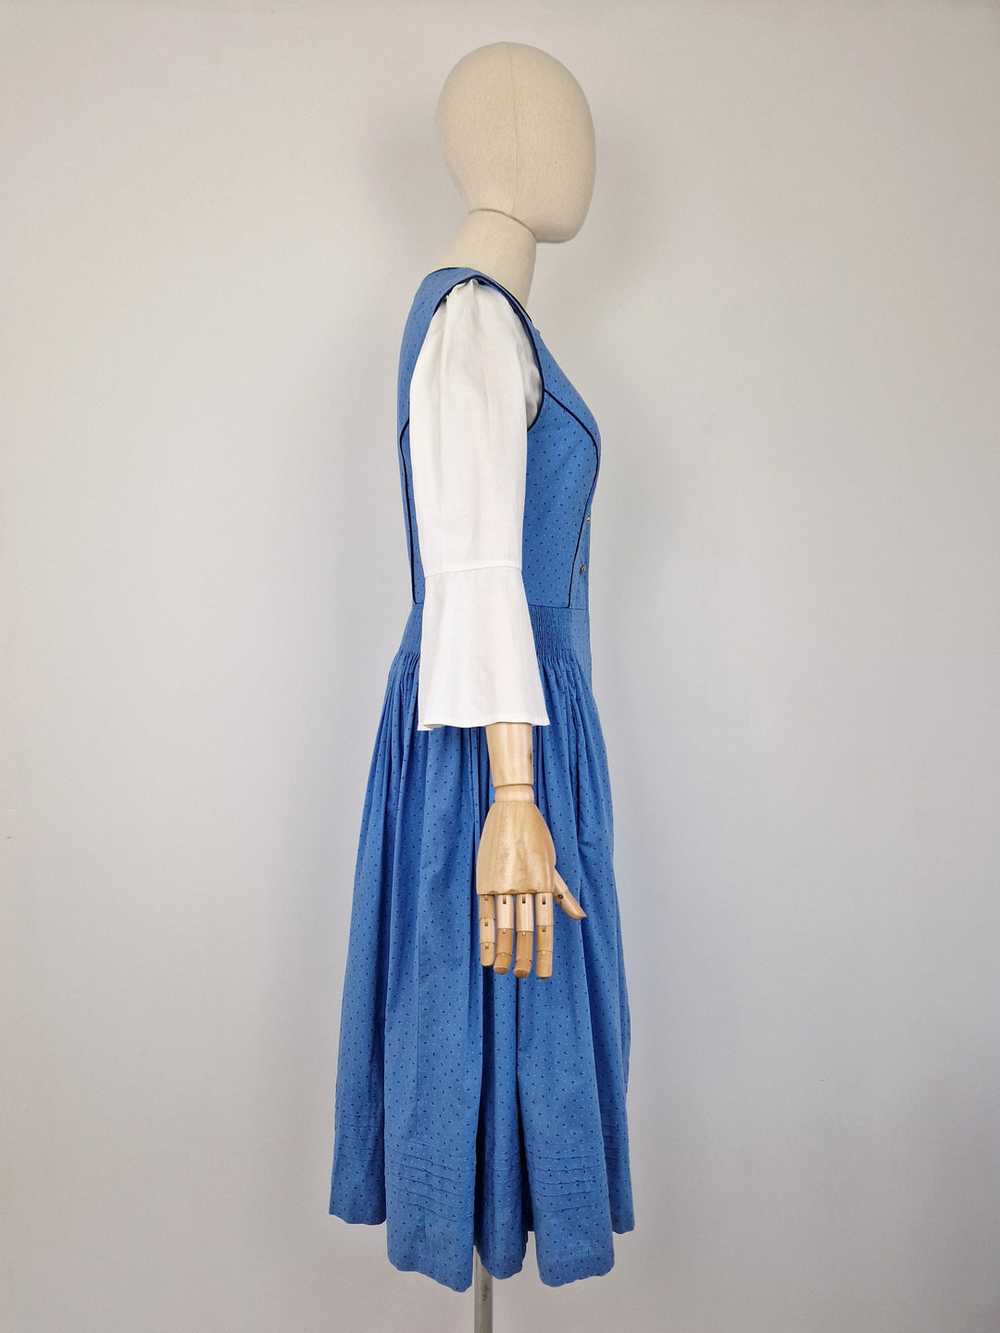 Vintage blue dirndl dress - image 5